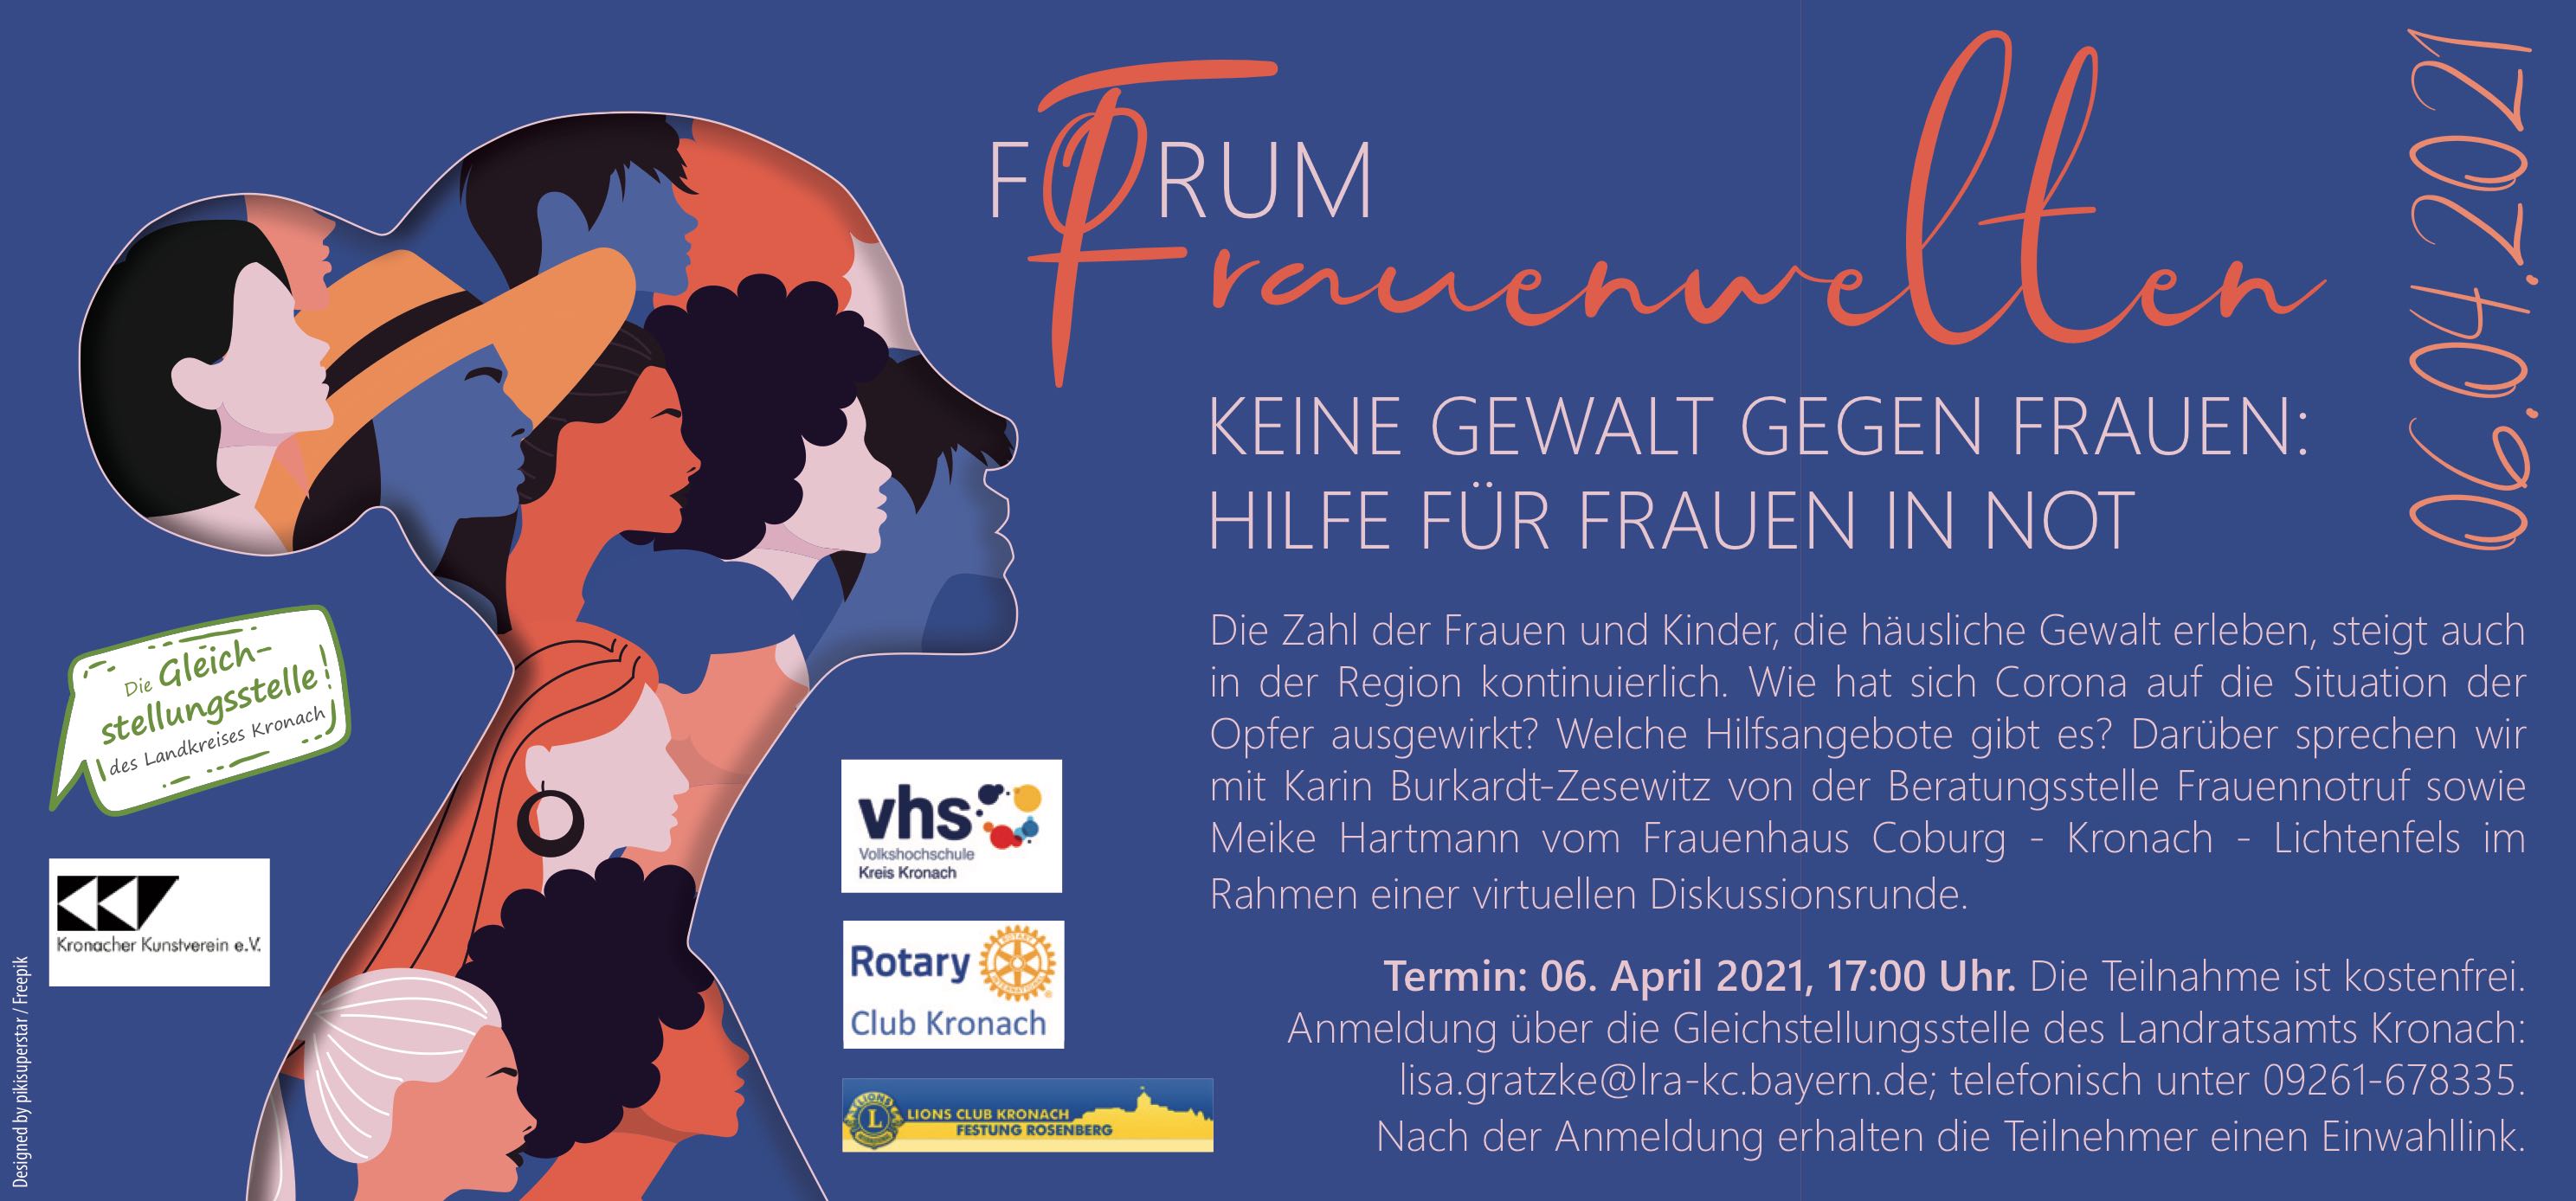 Forum Frauenwelten am 6. April 2021